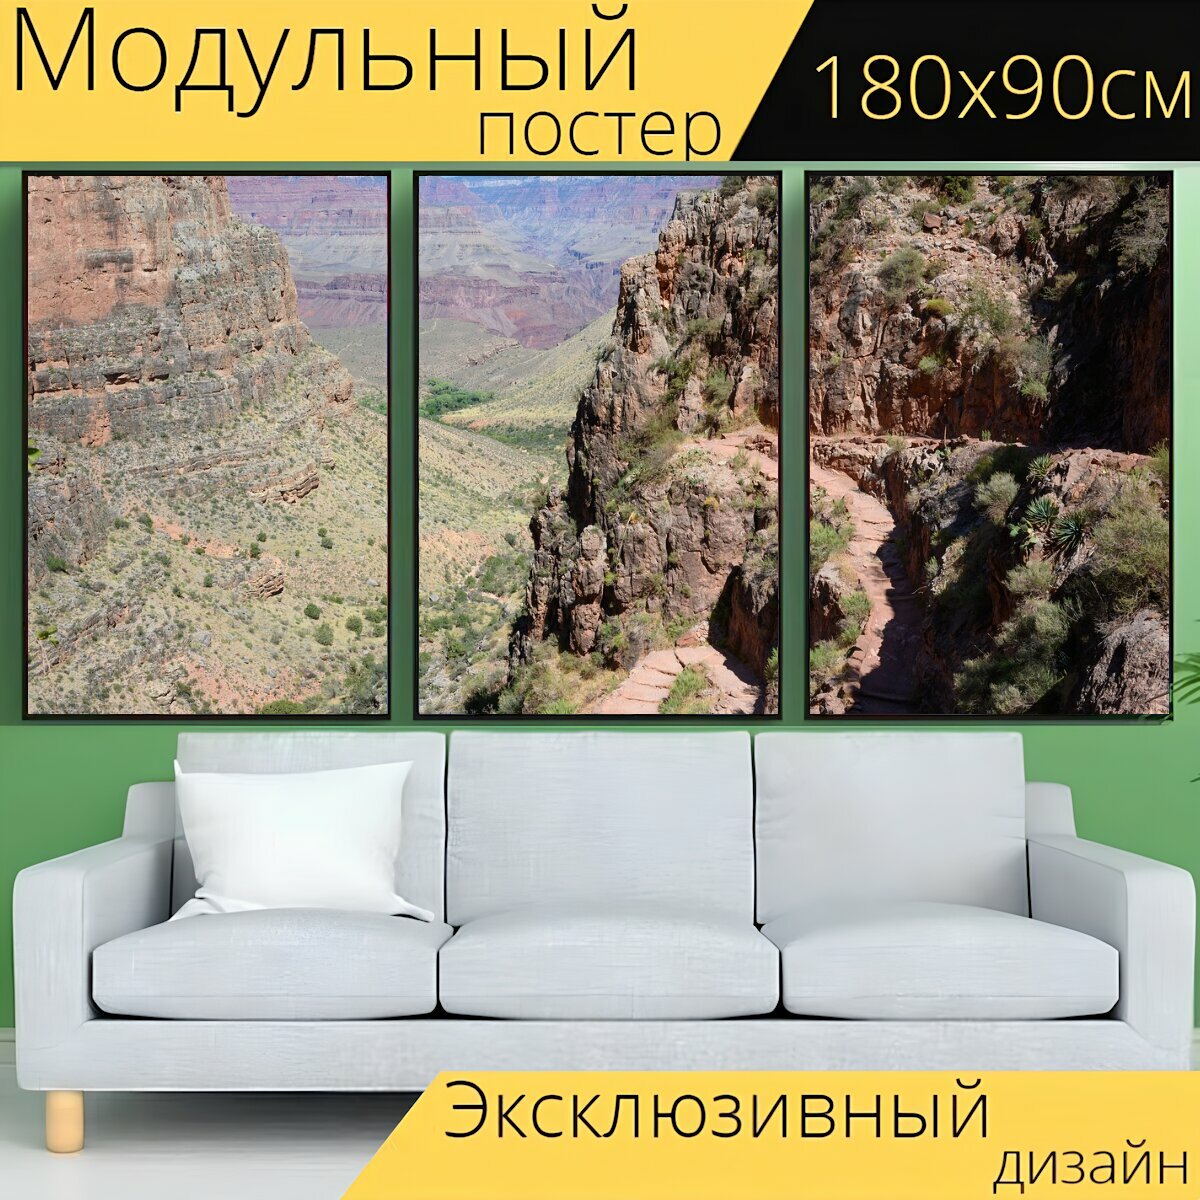 Модульный постер "Большой каньон, каньон, пеший туризм" 180 x 90 см. для интерьера